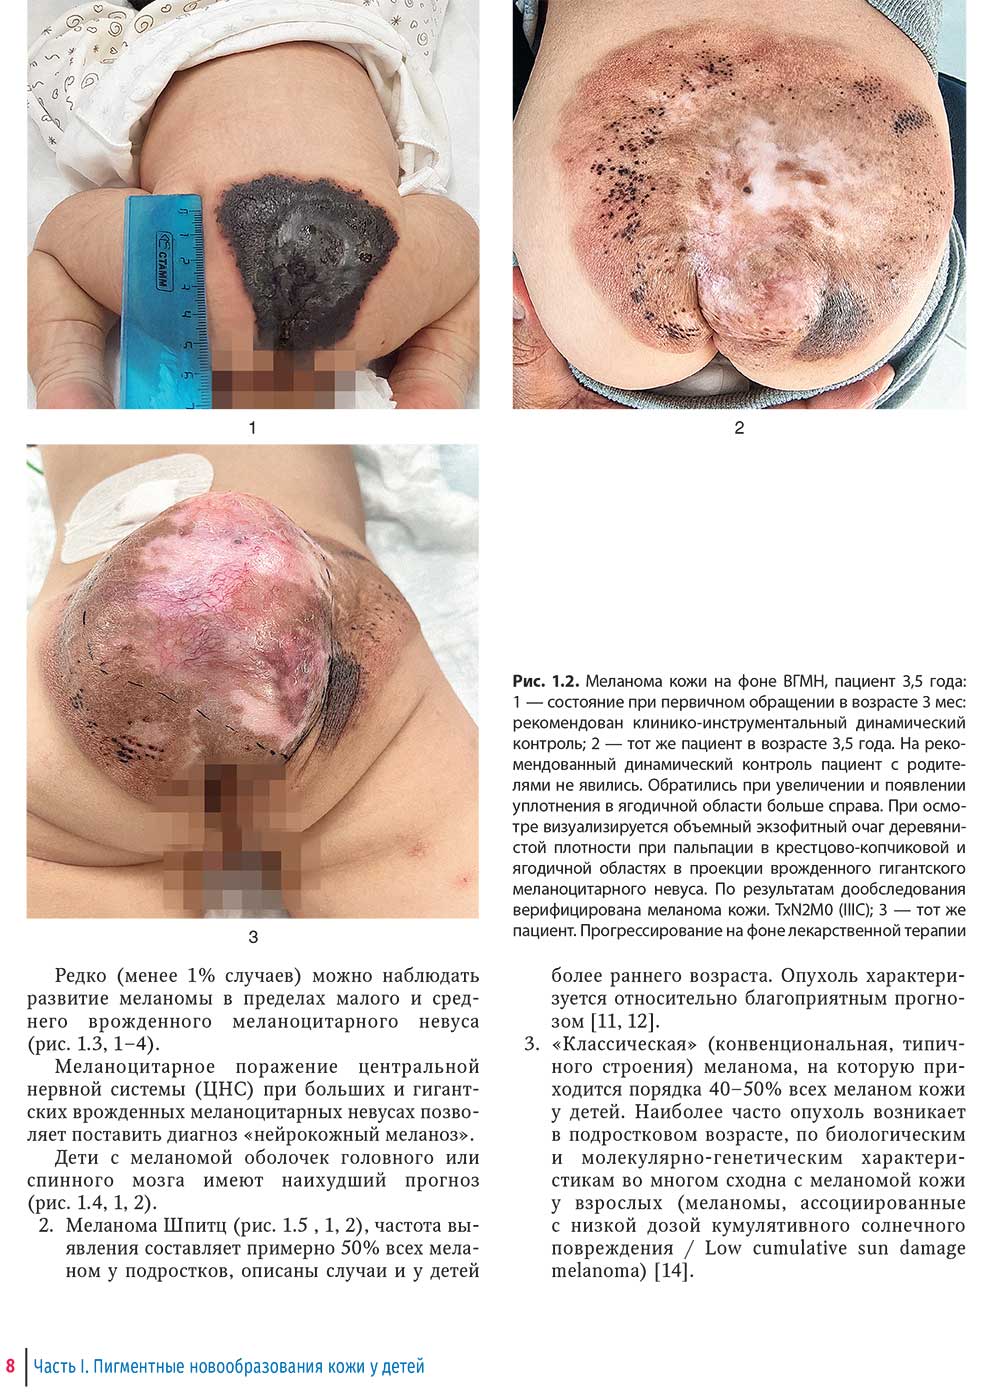 Меланома кожи на фоне ВГМН, пациент 3,5 года